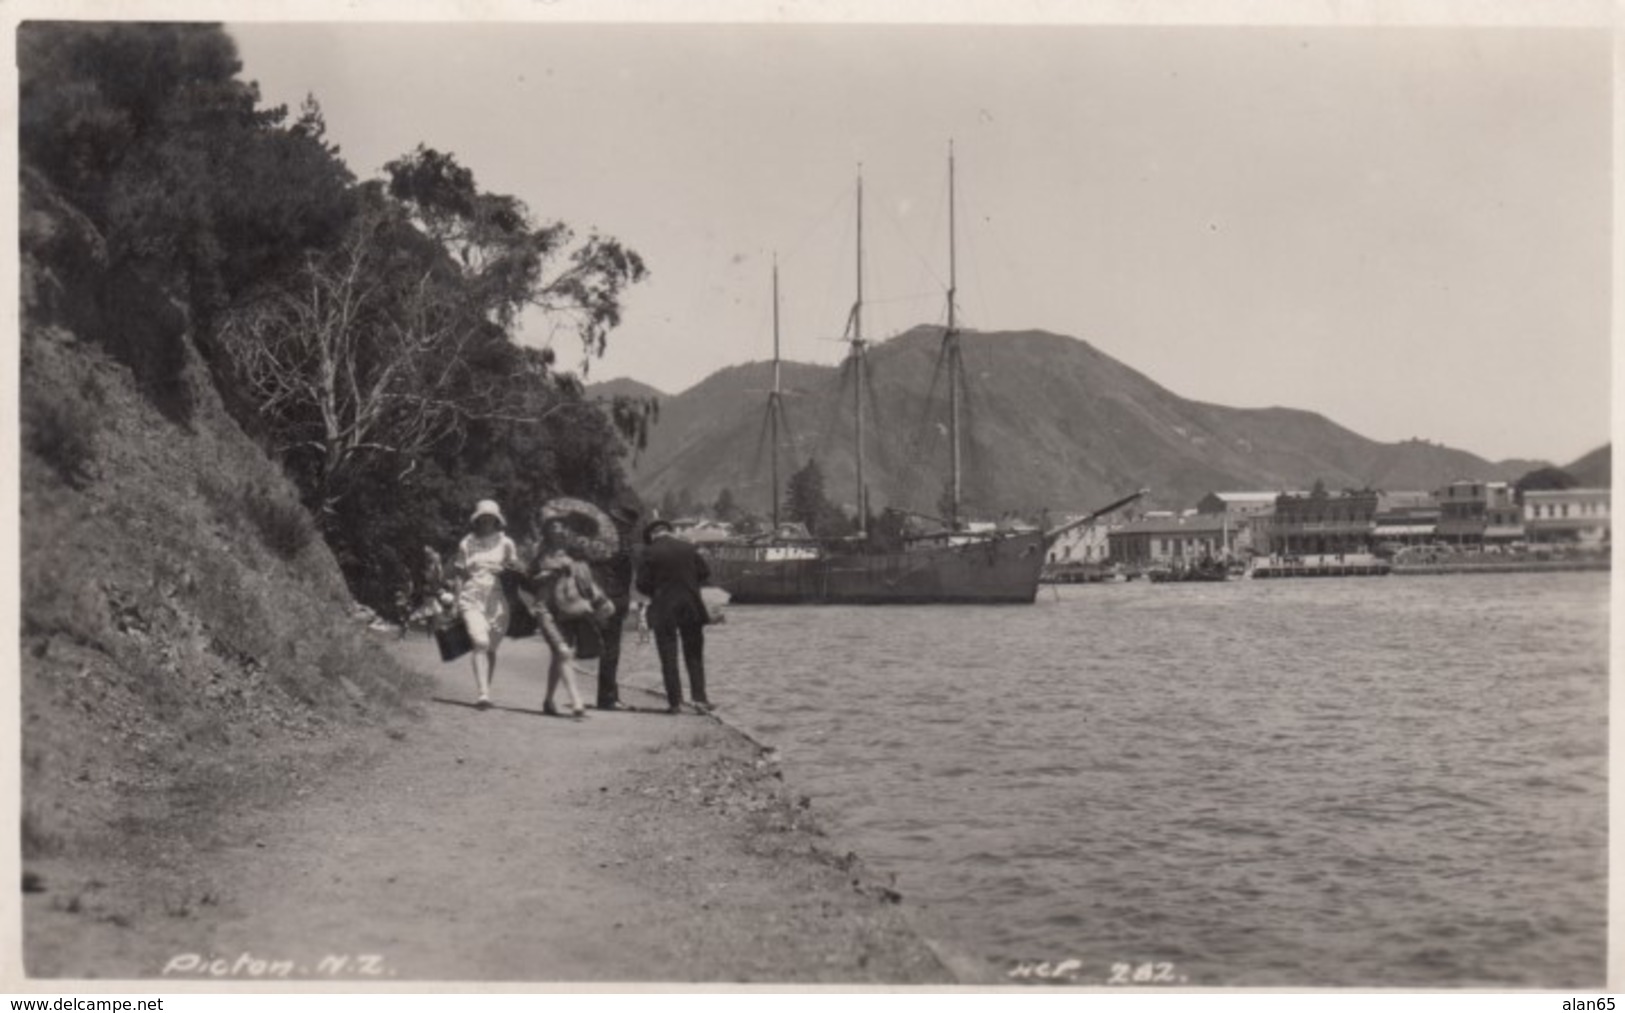 Picton New Zealand, People Walk Along Path At Shore, Harbour Ship, C1910s Vintage Real Photo Postcard - Nouvelle-Zélande